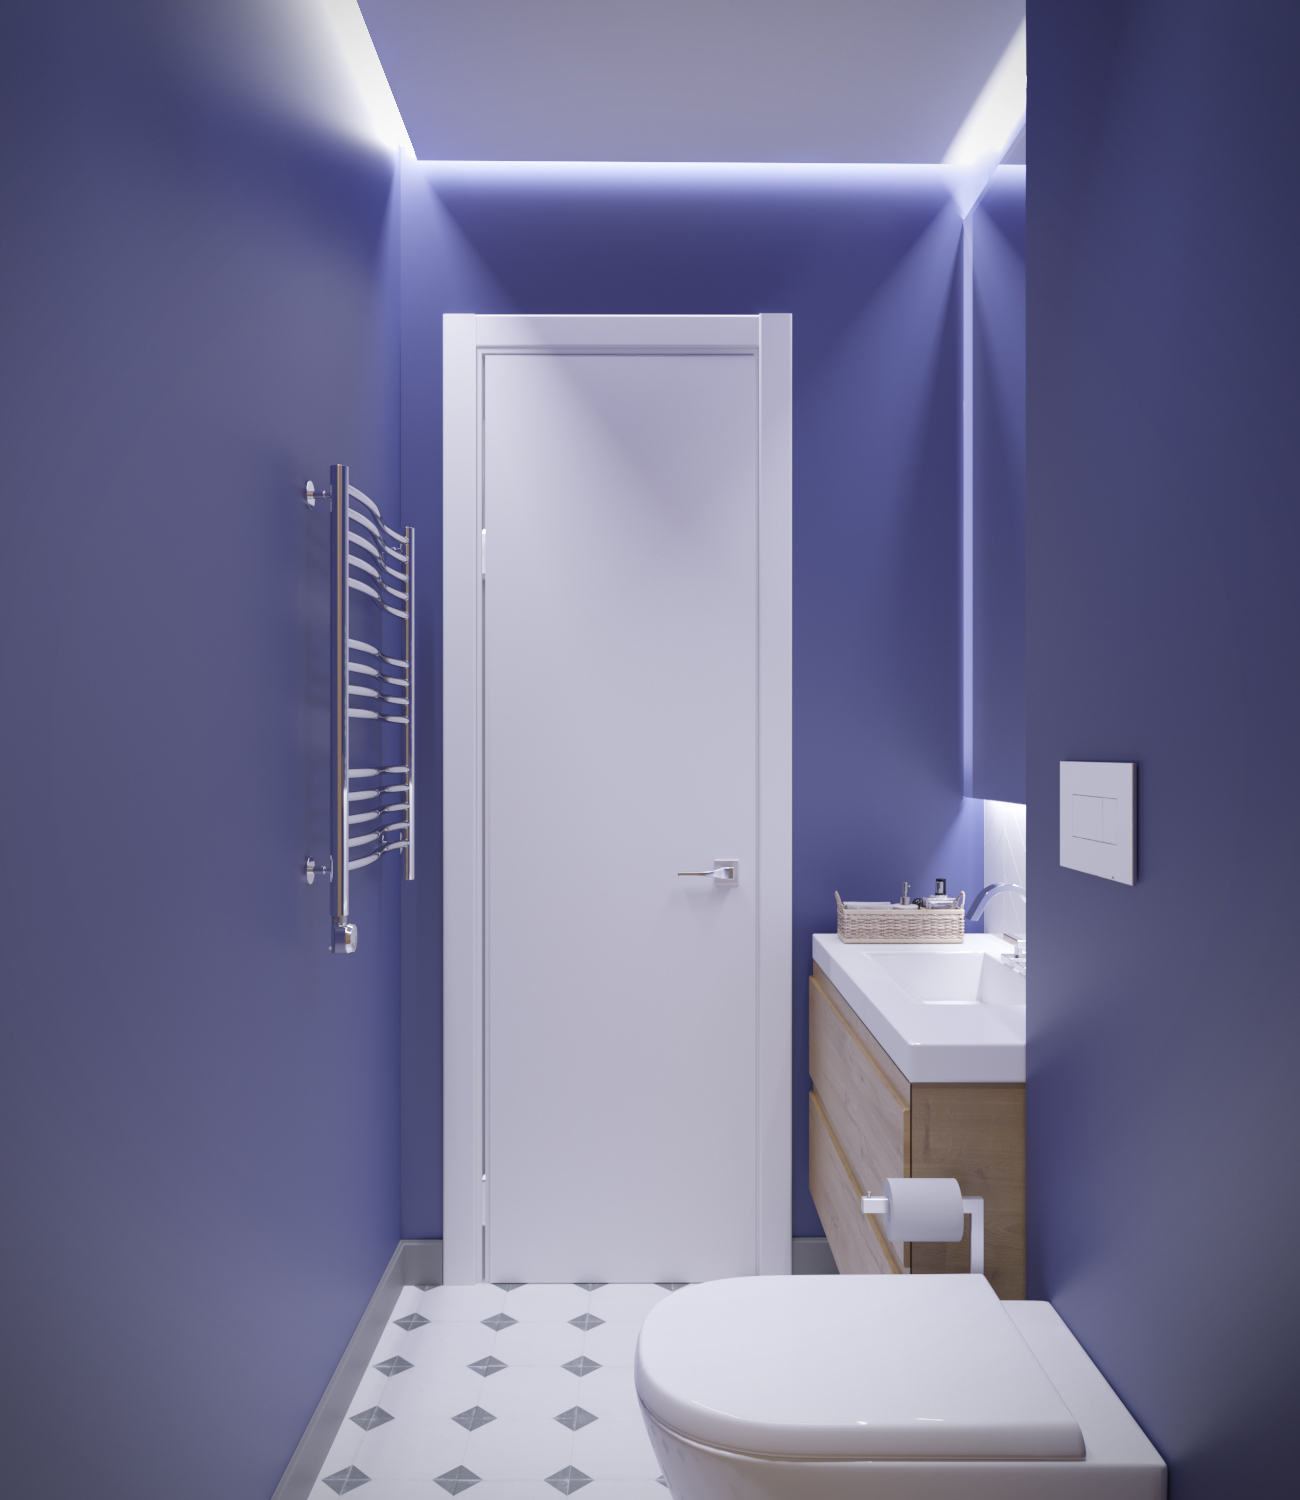 варианты освещения в туалете